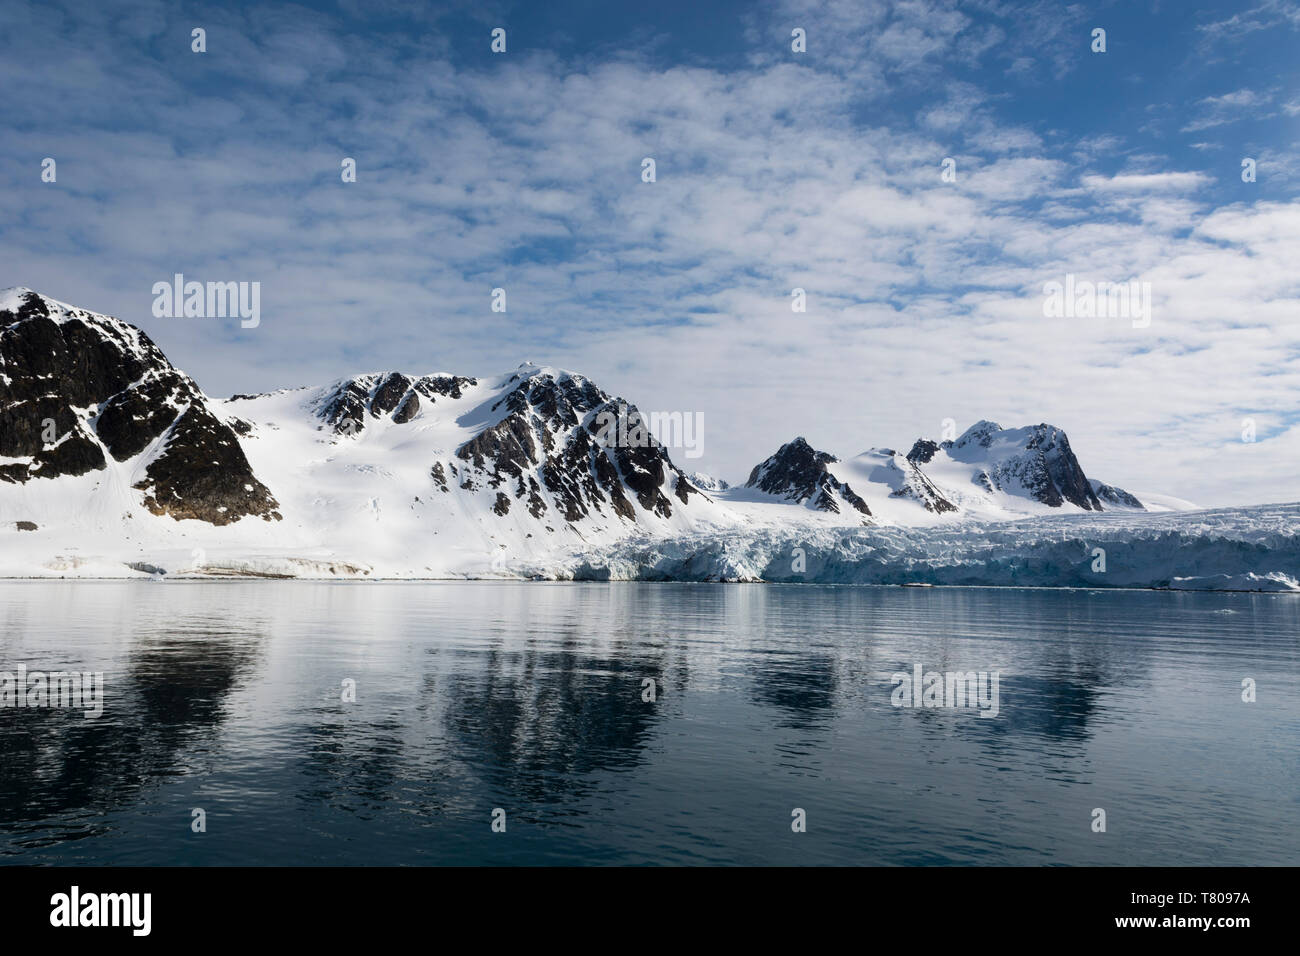 Fuglefjorden, Spitsbergen, Svalbard Islands, Arctic, Norway, Europe Stock Photo